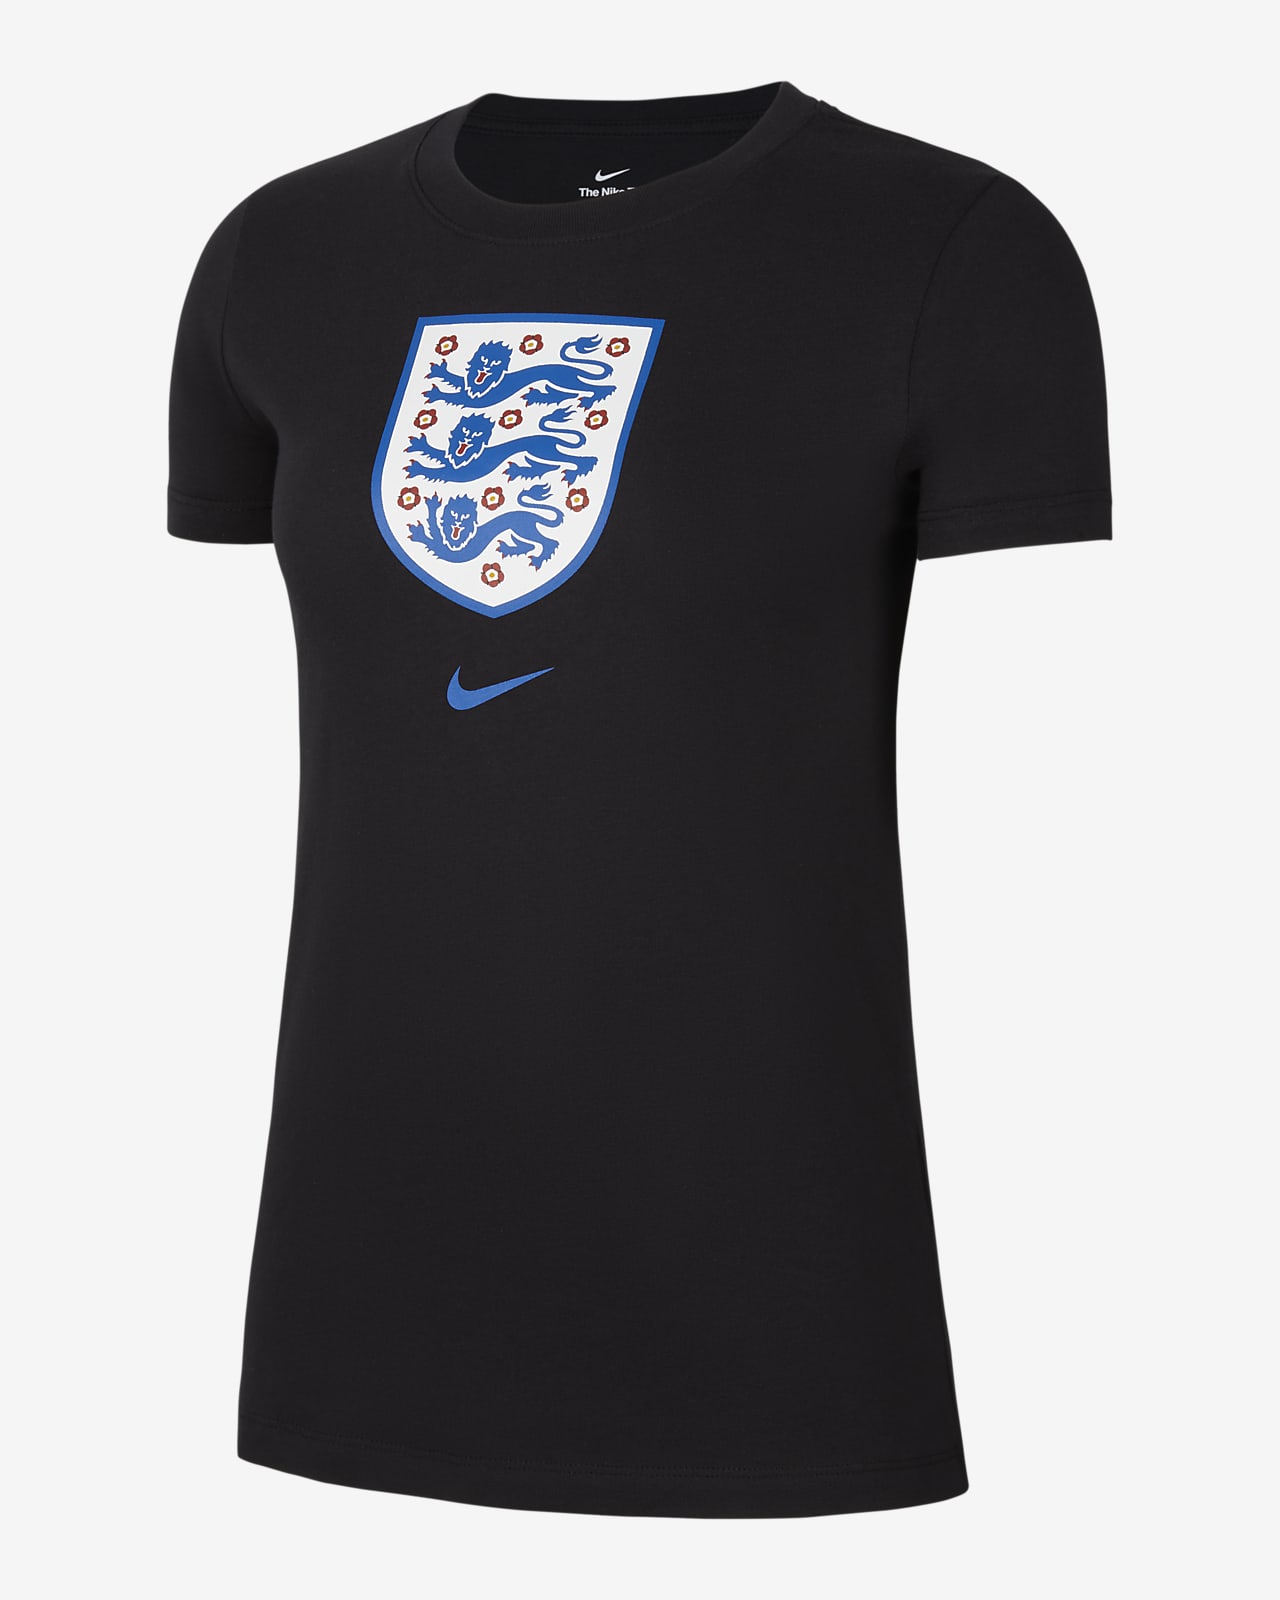 England Women's Football T-Shirt